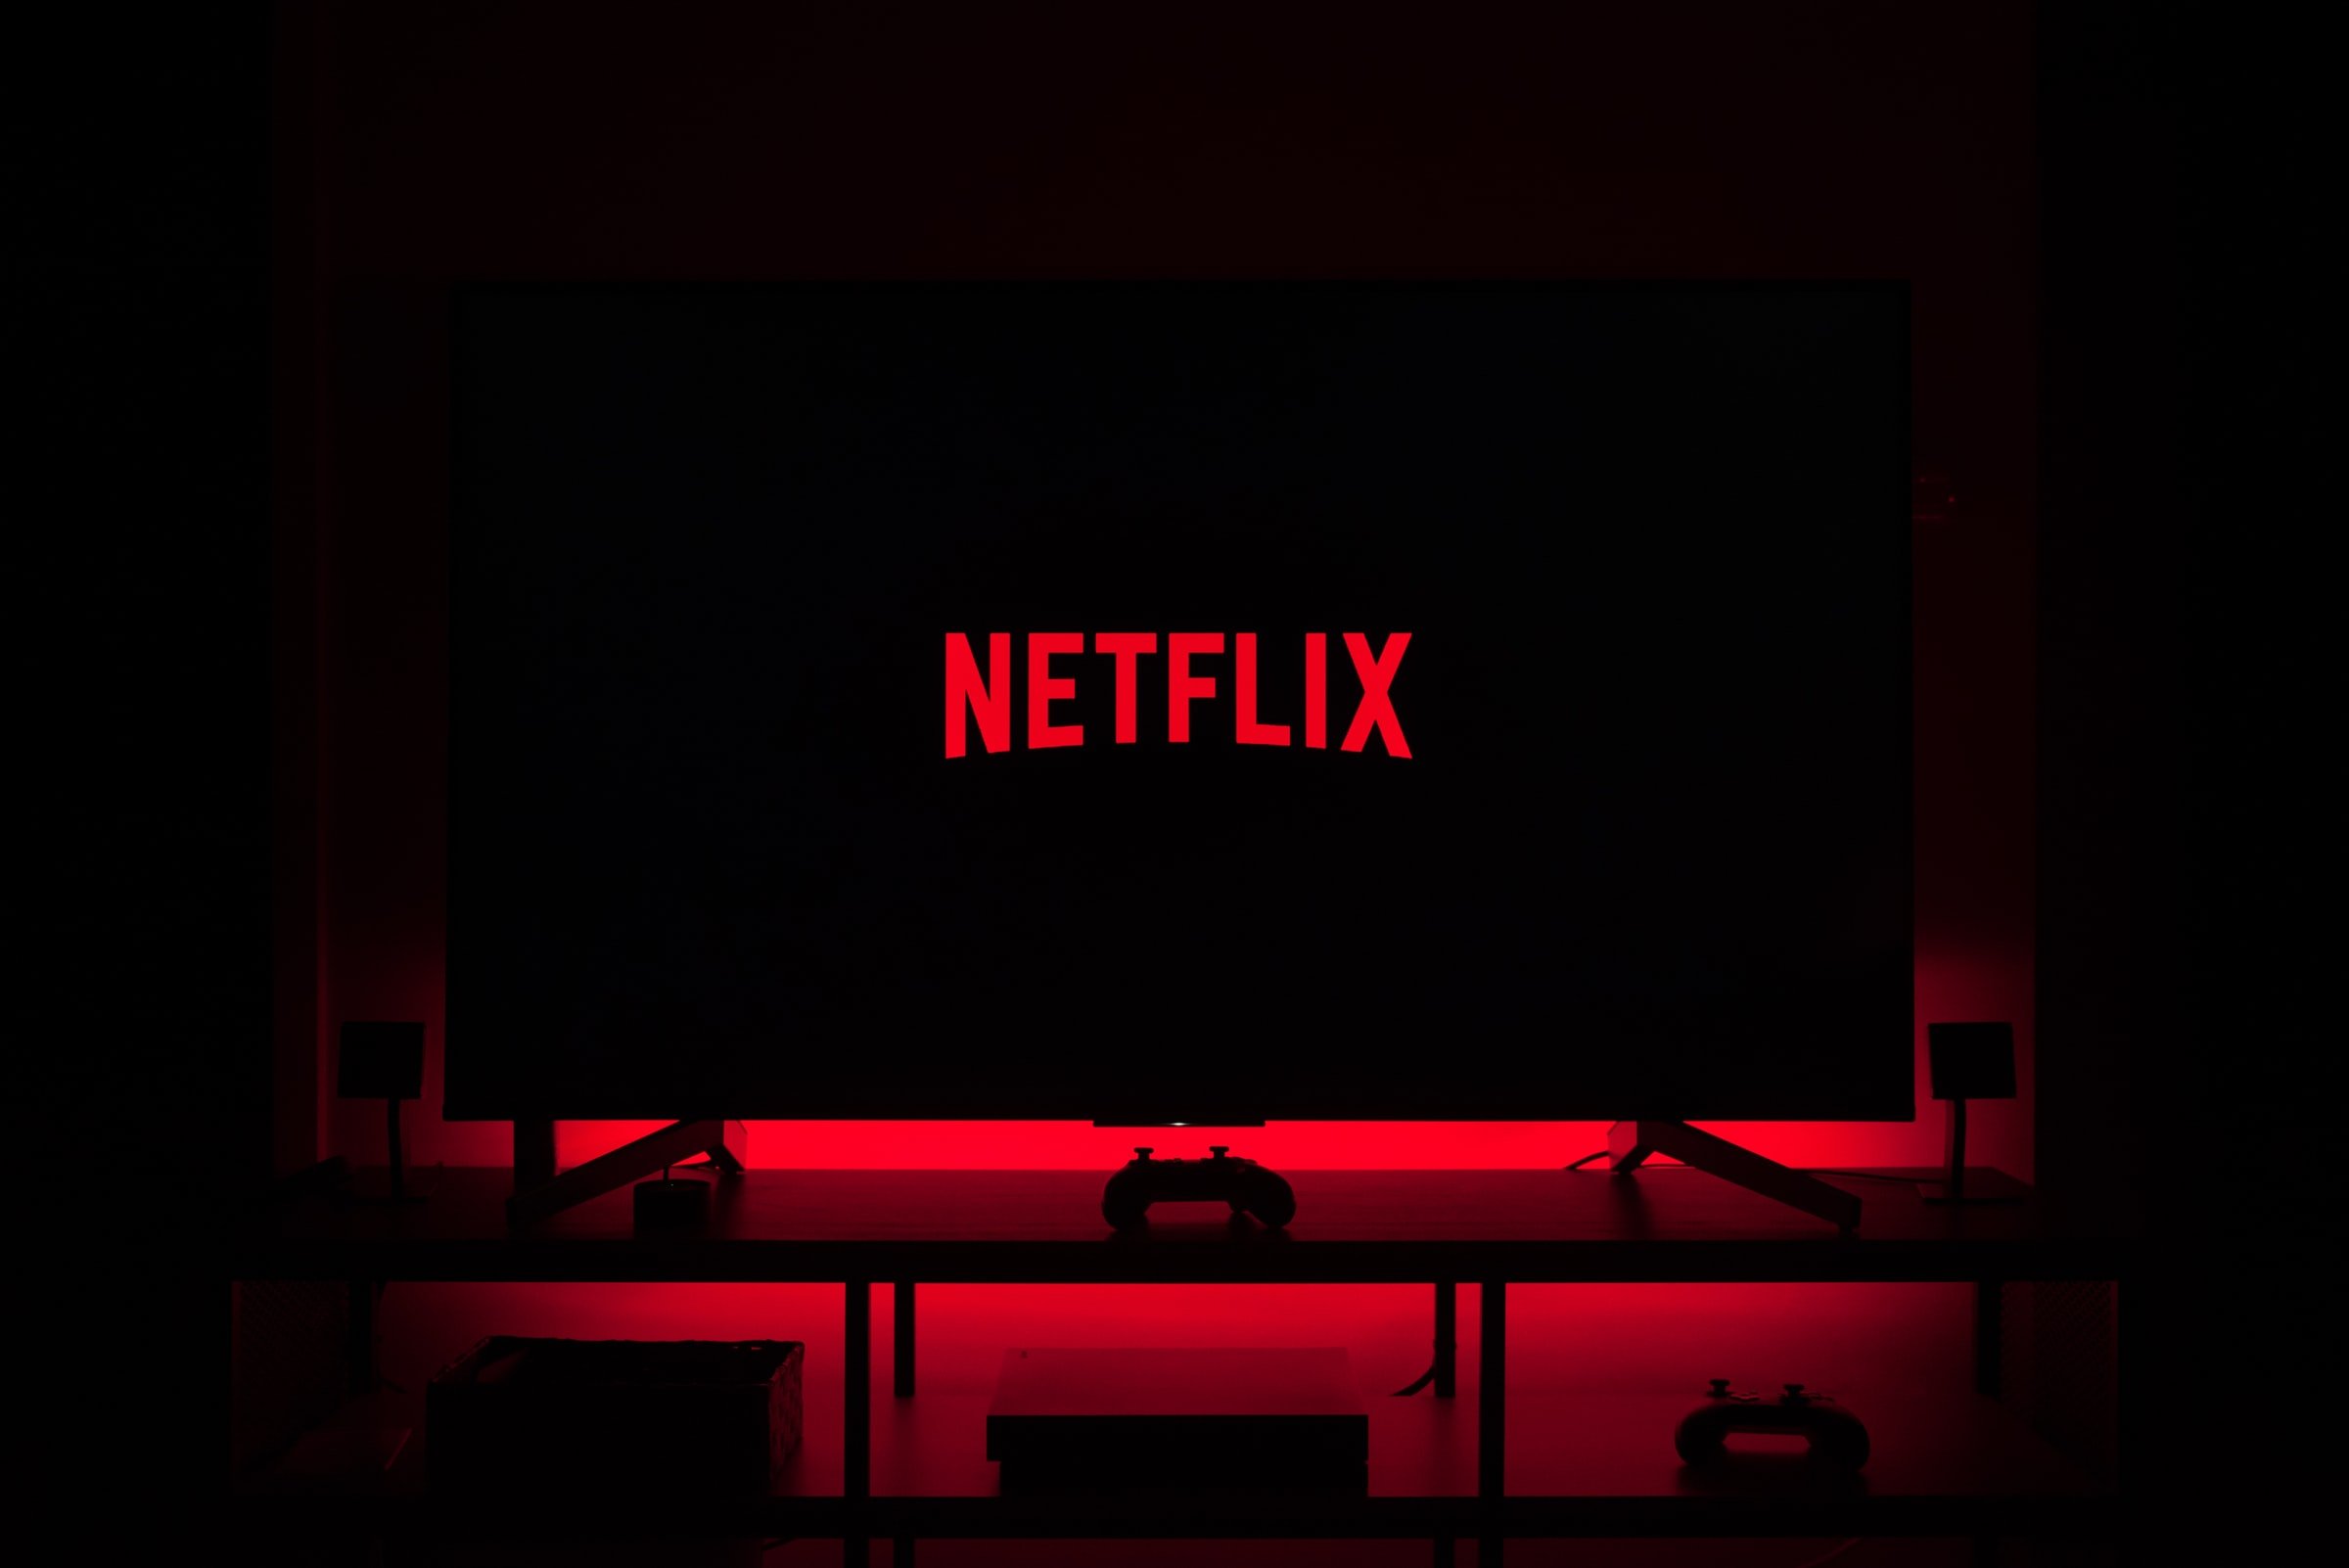 As melhores séries e filmes que chegam à Netflix em setembro